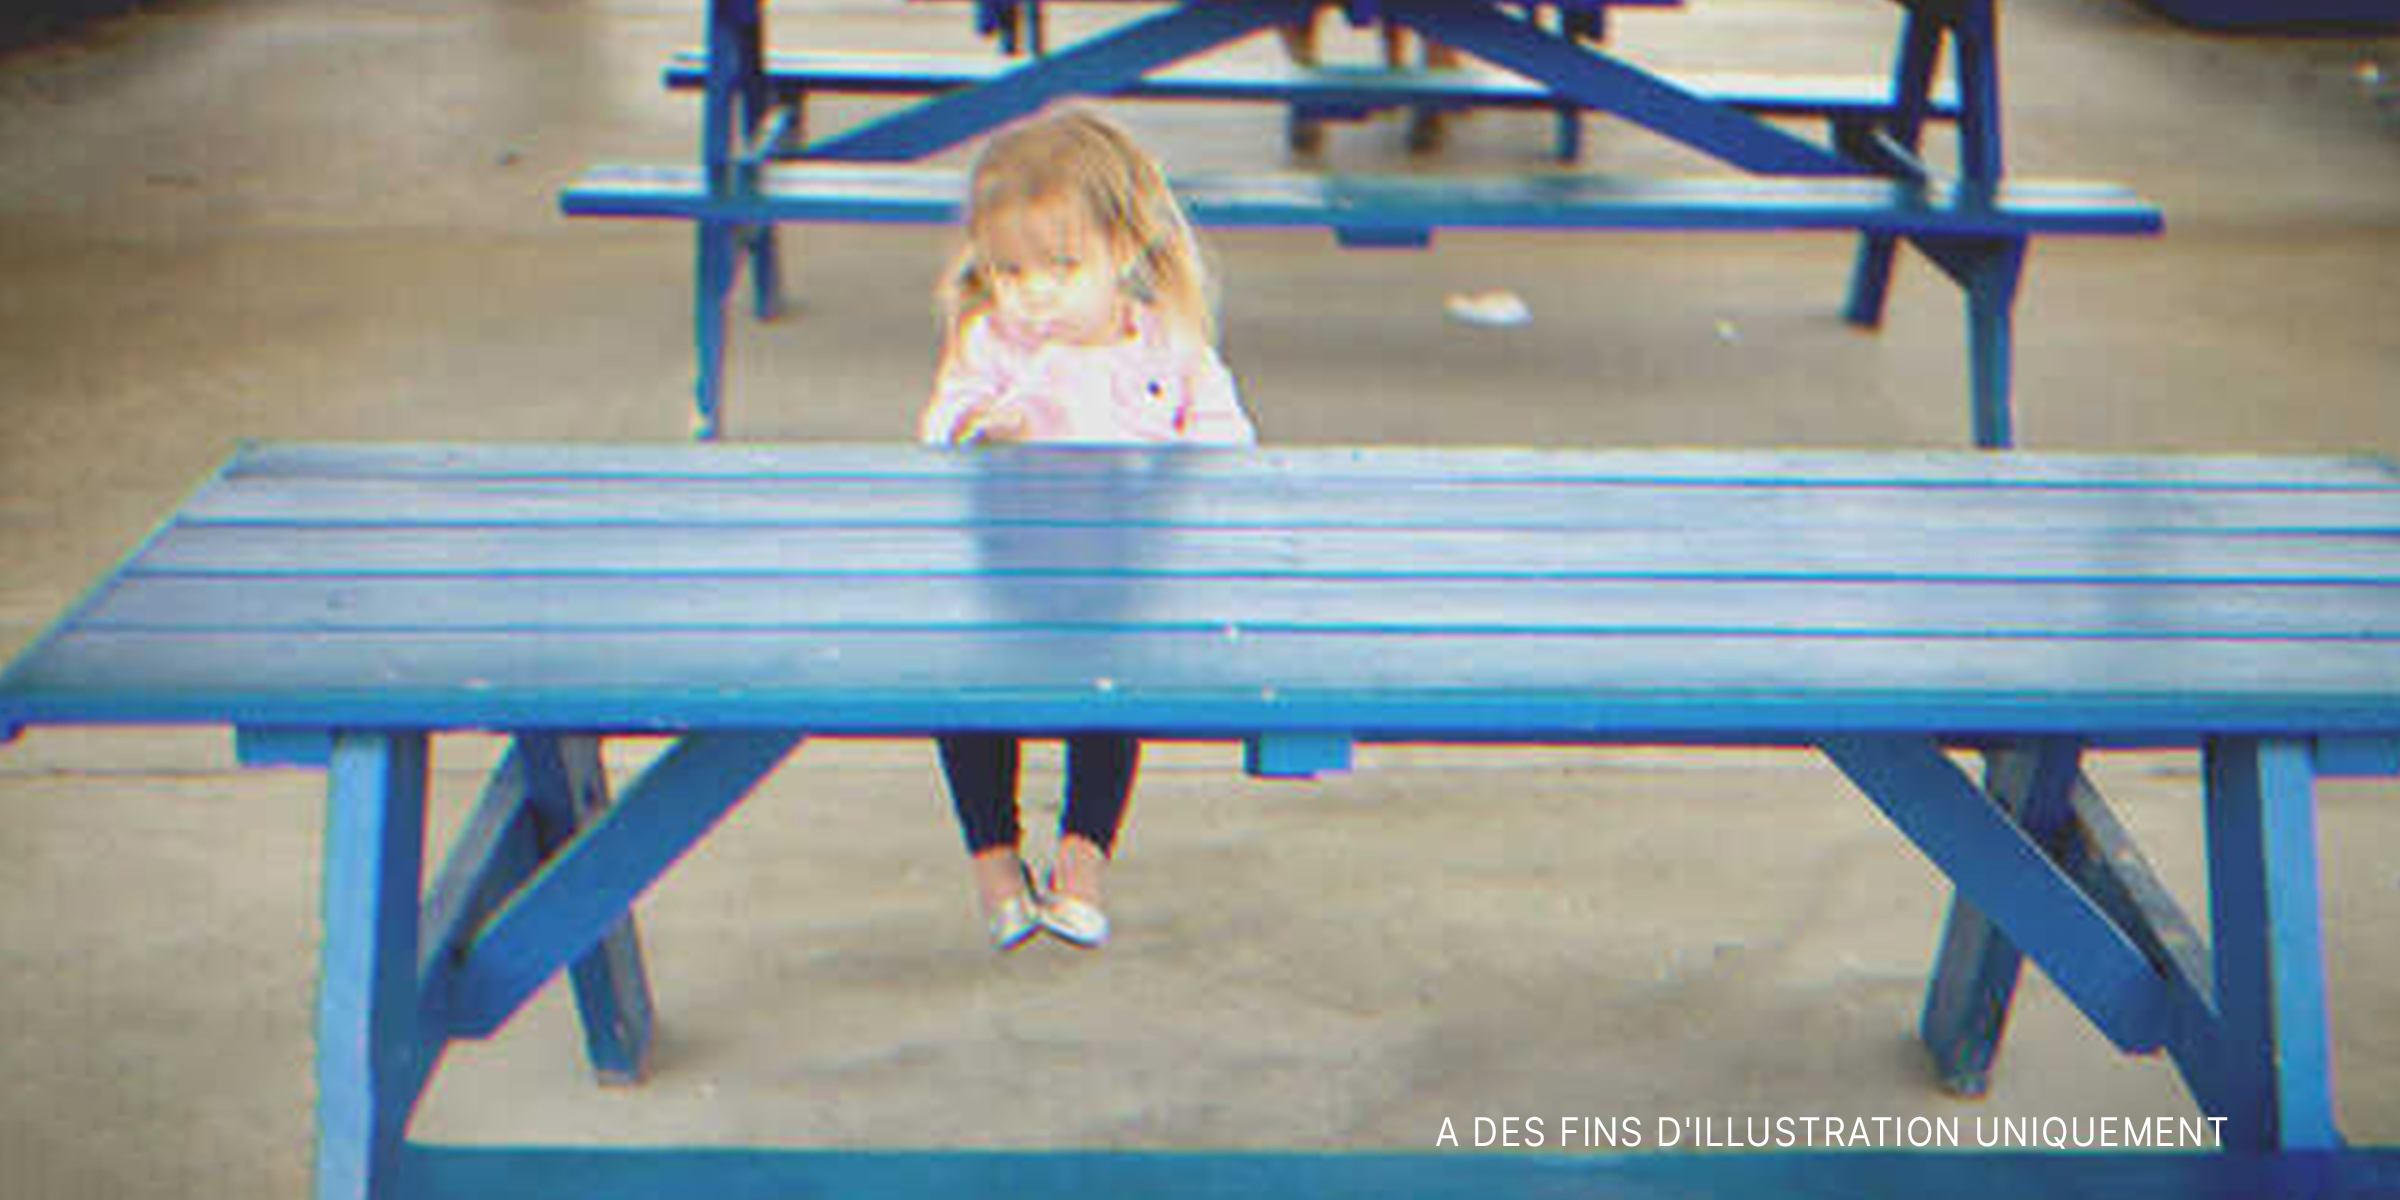 Une petite fille solitaire assise sur un banc | Source : Shutterstock